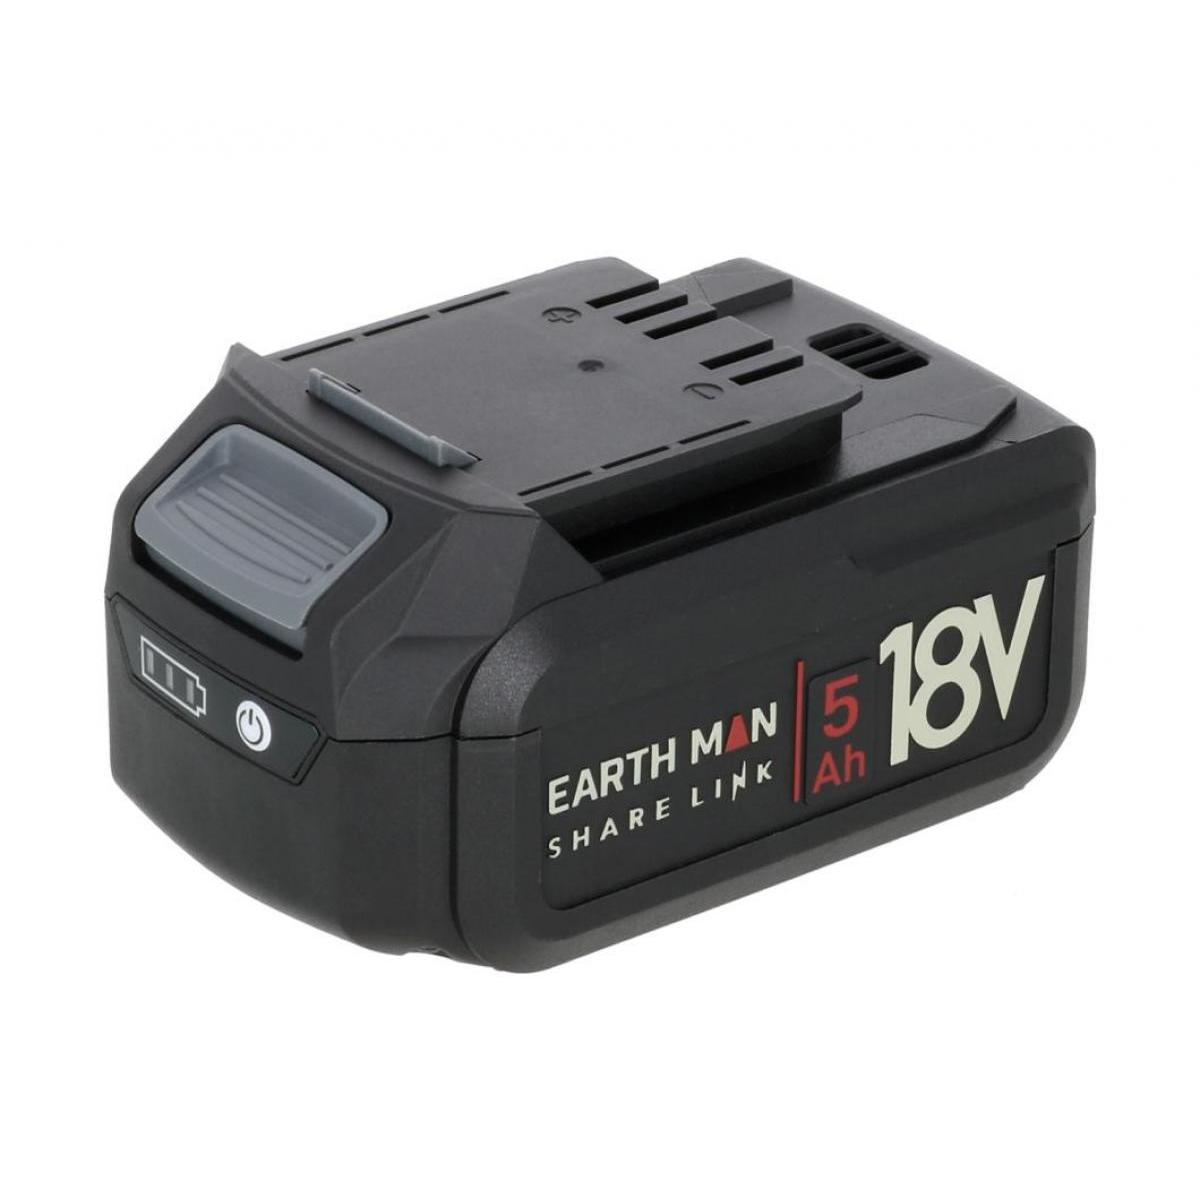 高儀 EARTH MAN SHARE LINK 18V 専用 バッテリーパック 【 5.0Ah 】 SL-185BP-A 電動工具バッテリー